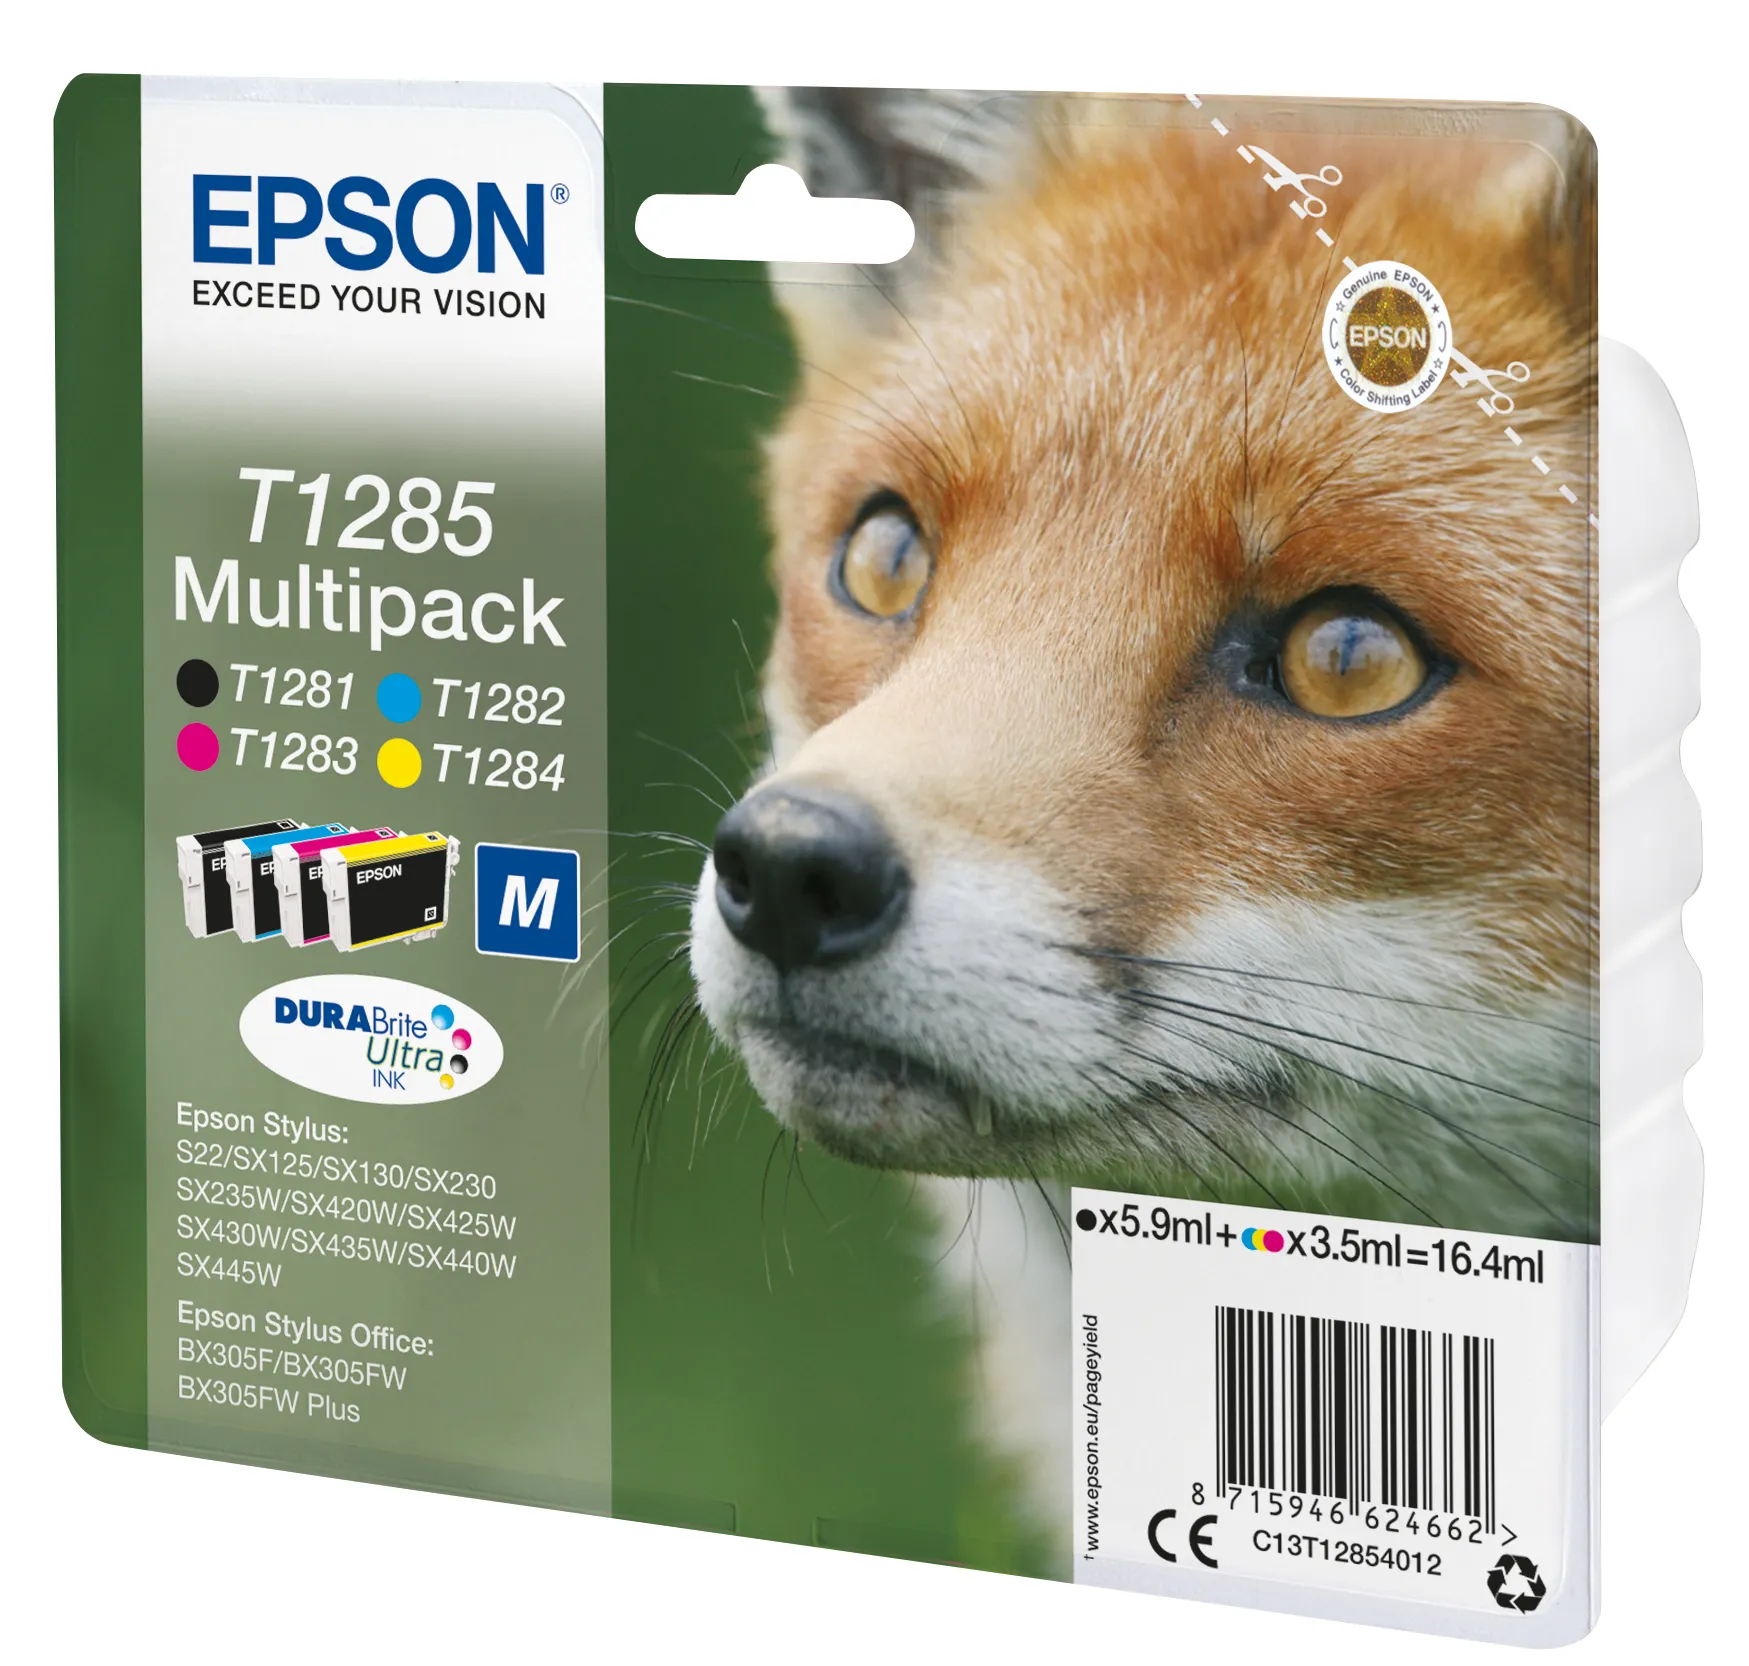 Vente EPSON T1285 cartouche d encre noir et tricolore Epson au meilleur prix - visuel 4